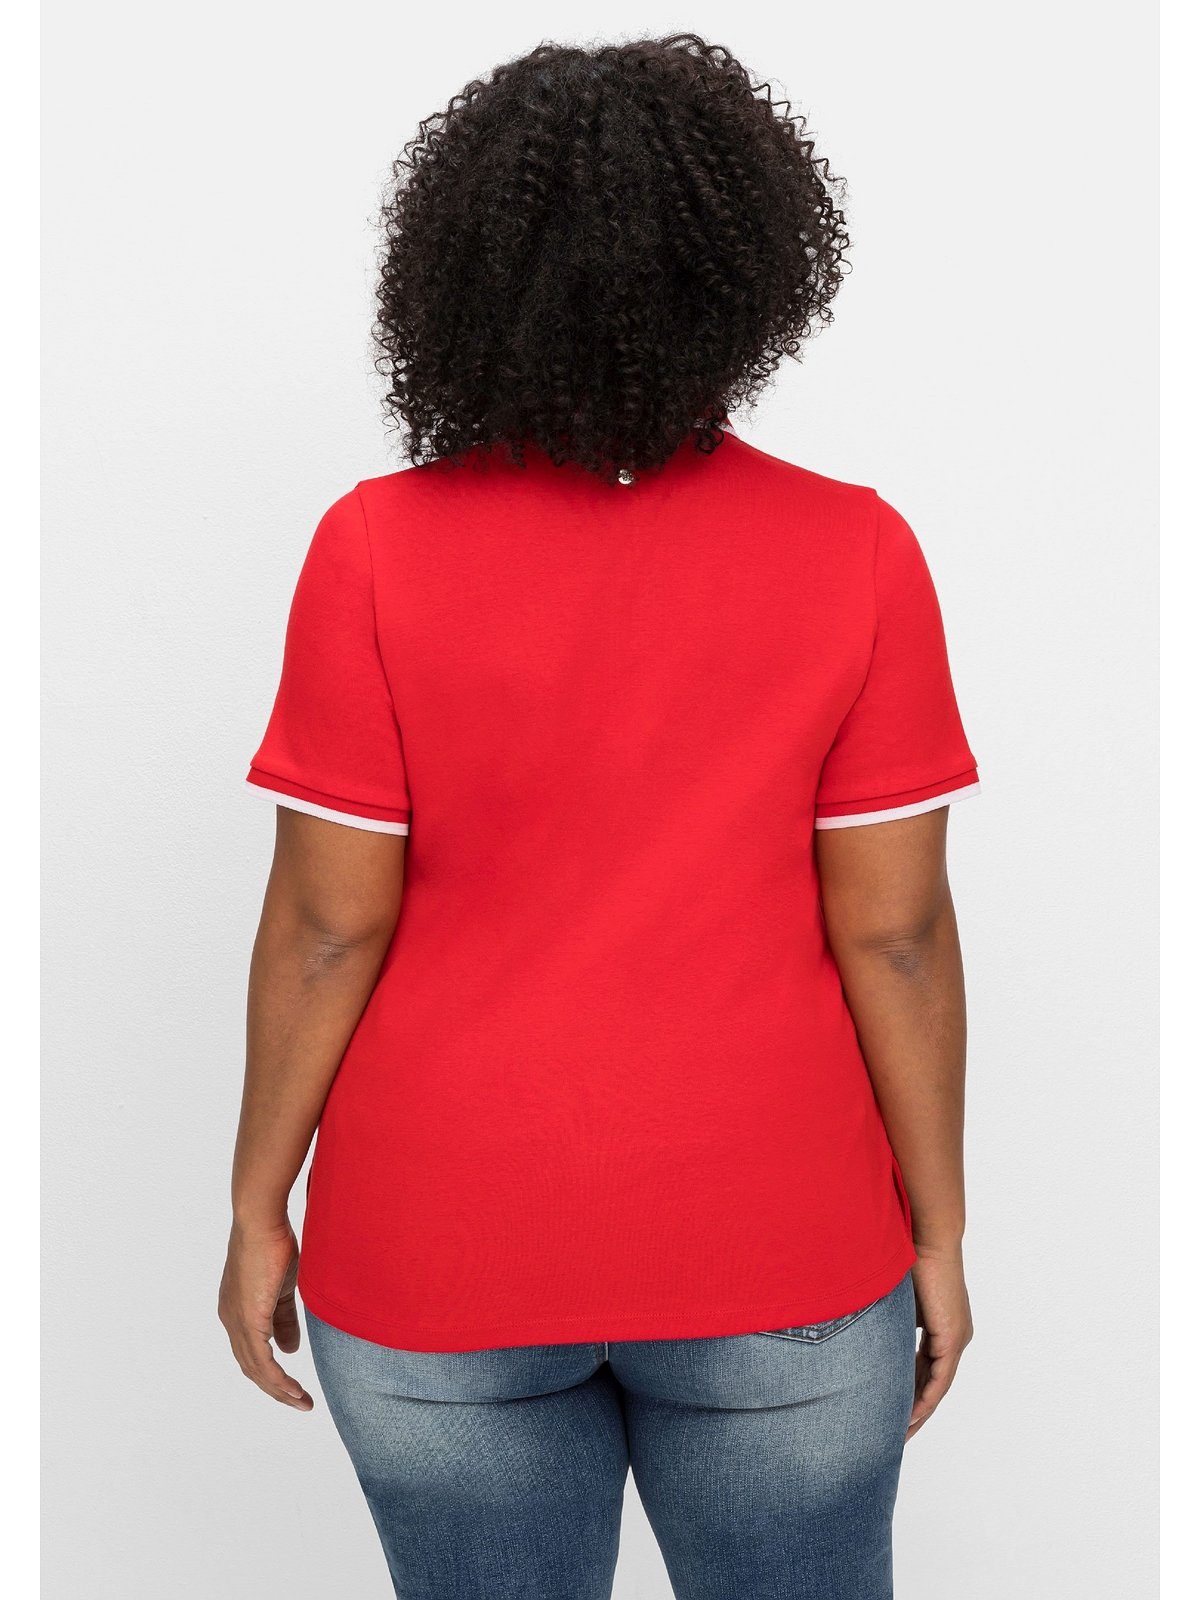 Sheego T-Shirt Große Größen Kontrastkanten, leicht tailliert mit